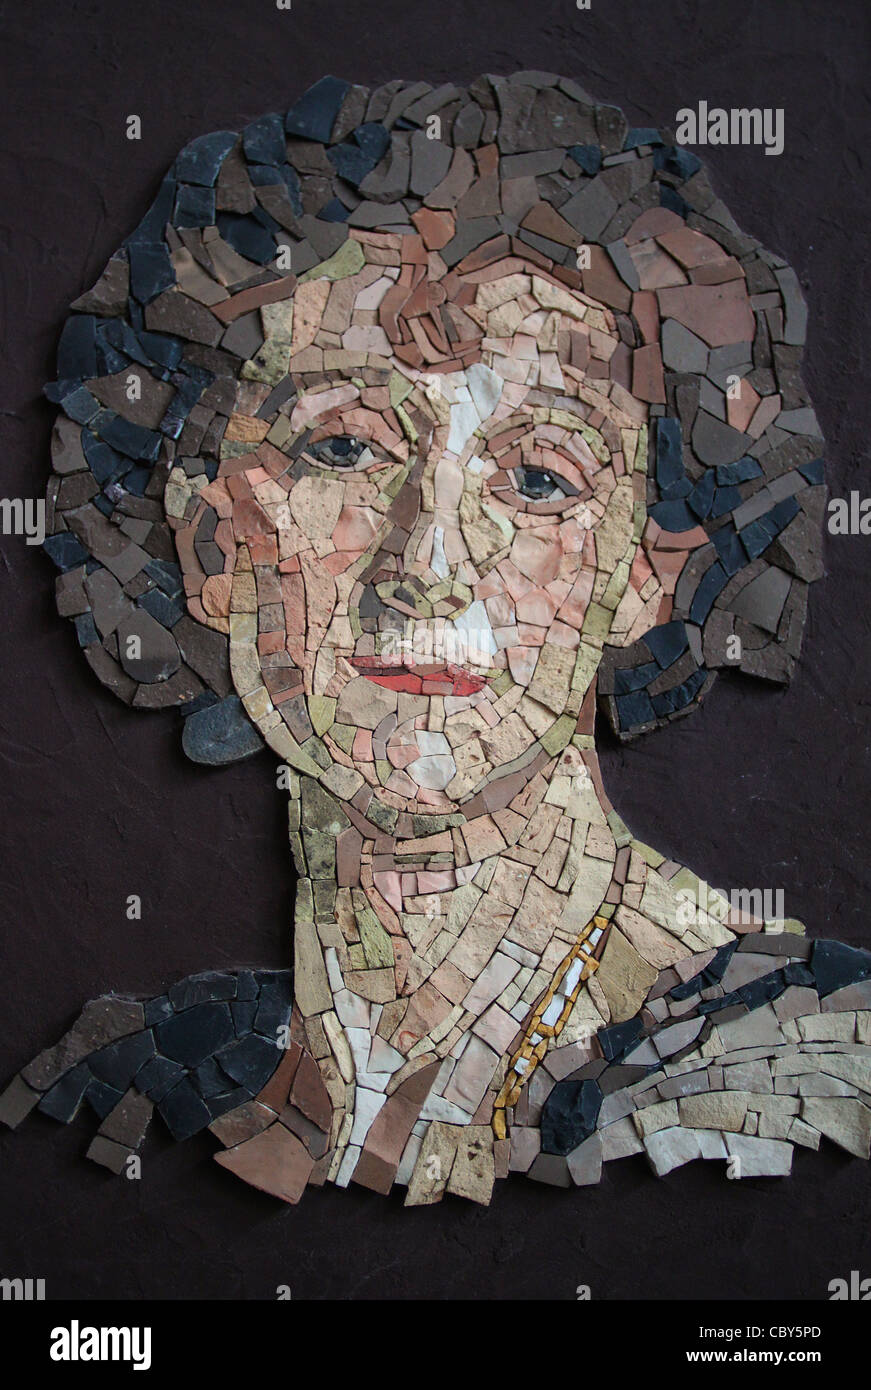 Interpretazione di Sargent' s ritratto di una donna. Illustrazione della seconda classe di studi presso la scuola del mosaico. Spilimbergo, Italia. Foto Stock